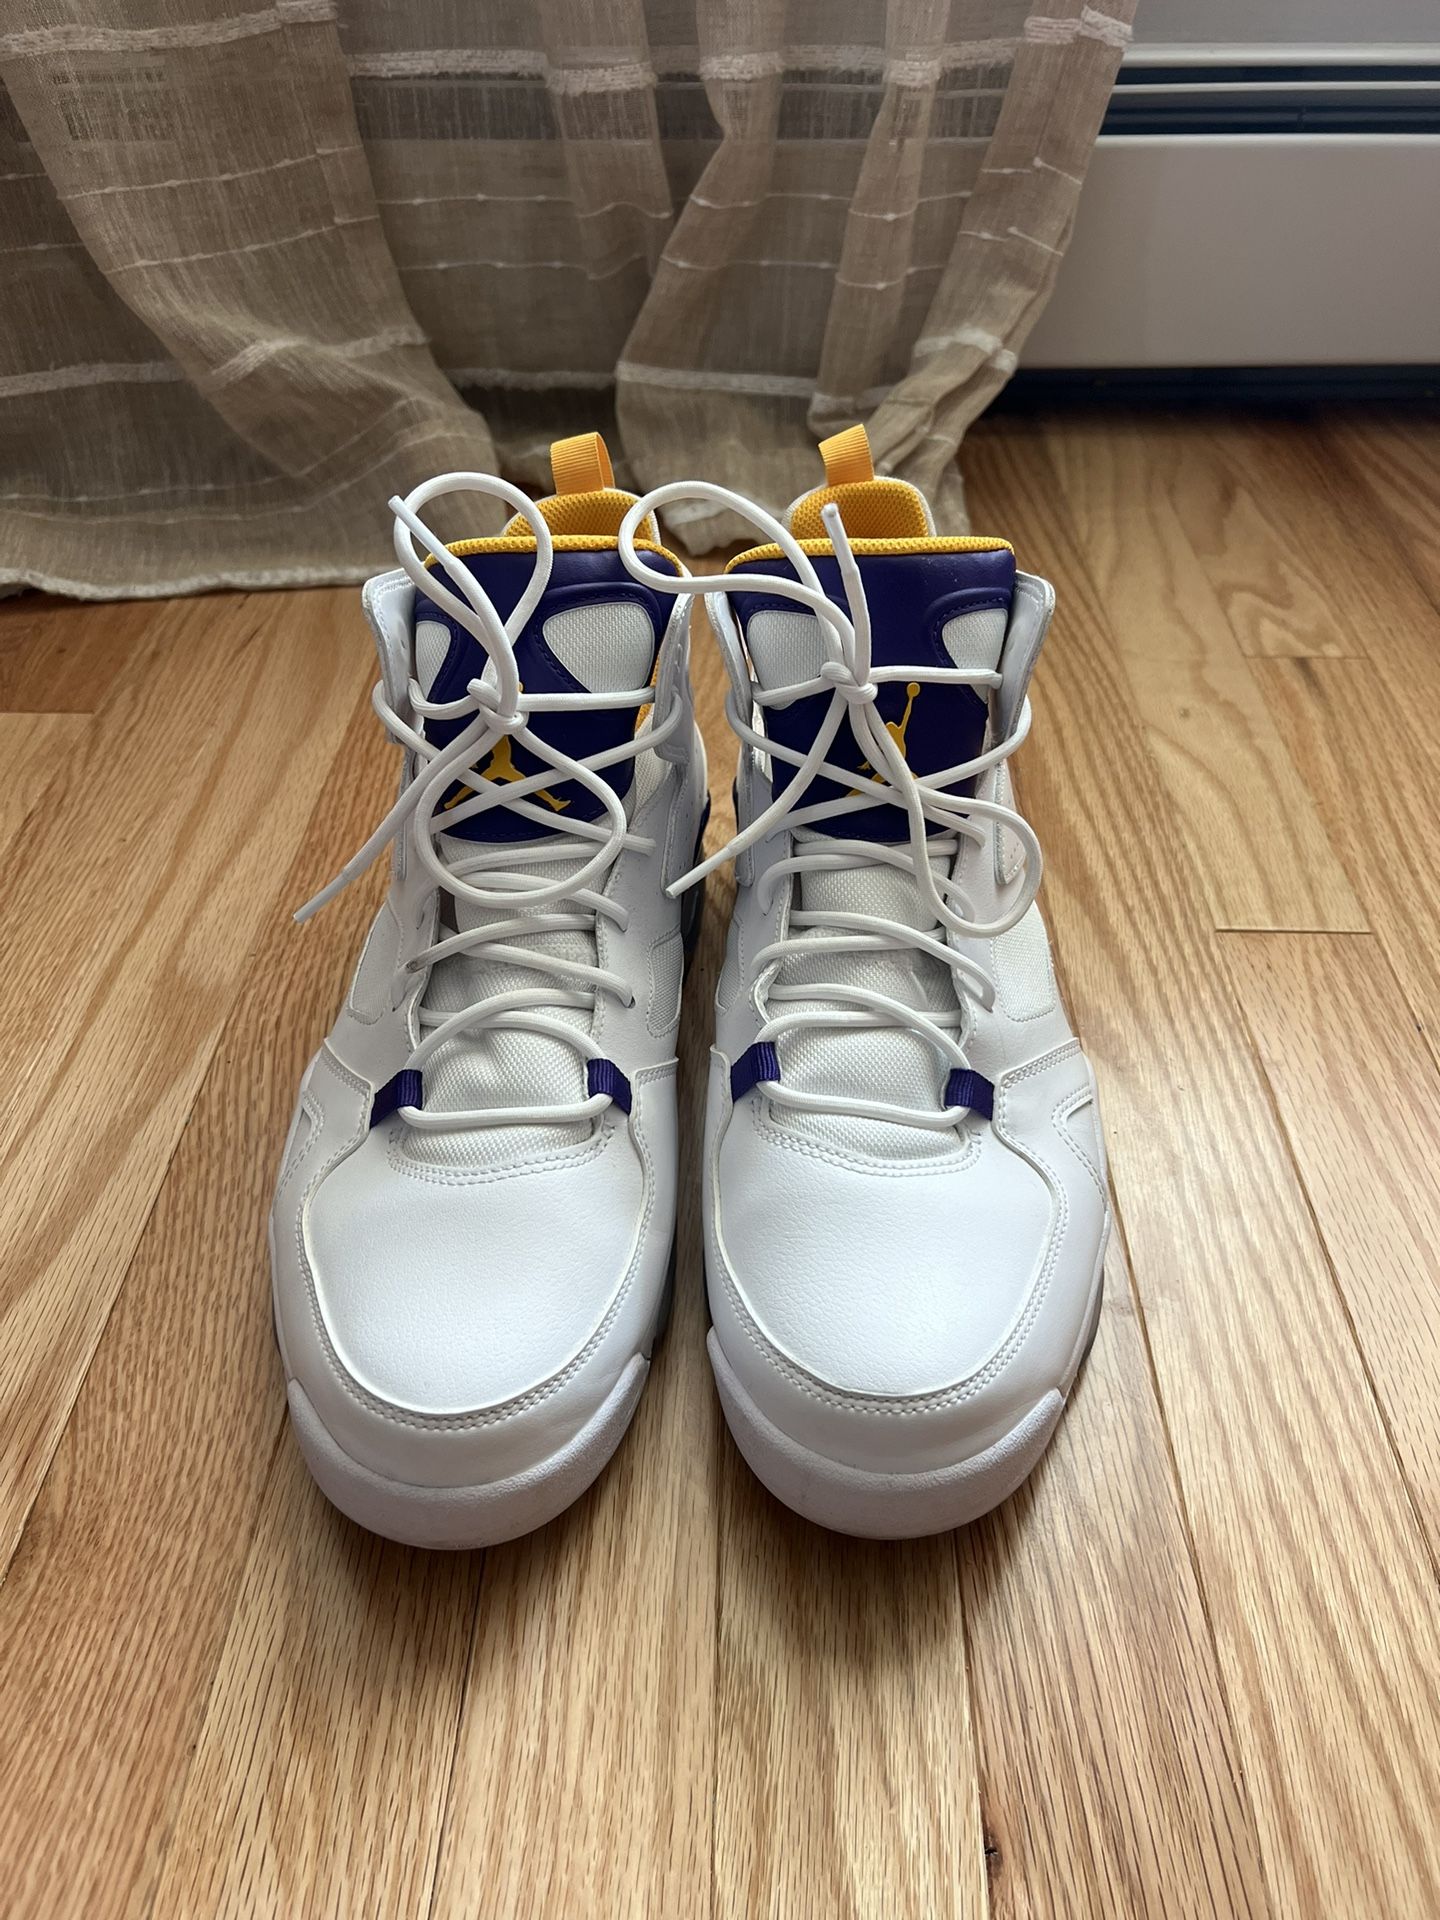 Jordan Flight Club 91 Lakers Shoes